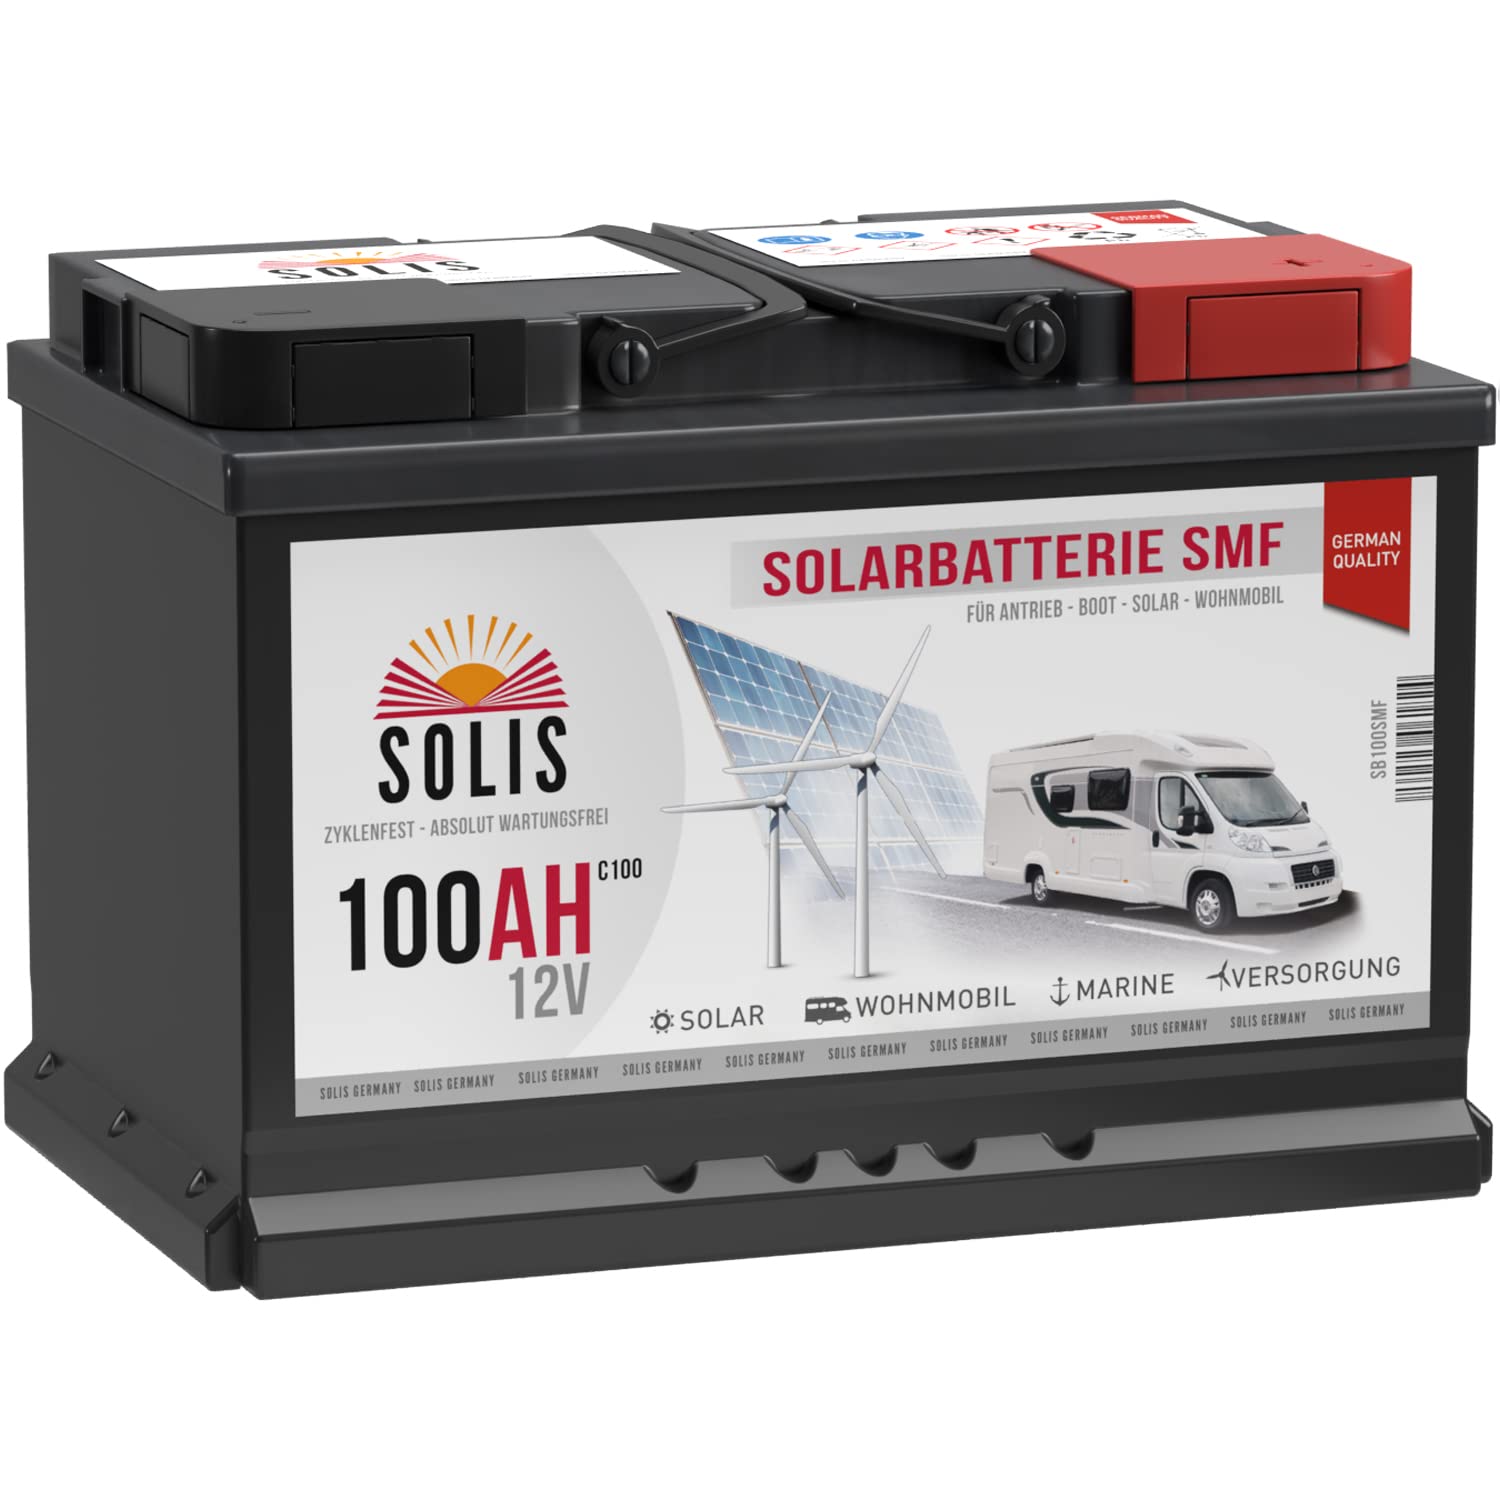 SOLIS Solarbatterie 12V 100Ah Batterie Solar Wohnmobil Batterie Wohnwagen Bootsbatterie vorgeladen auslaufsicher wartungsfrei von SOLIS